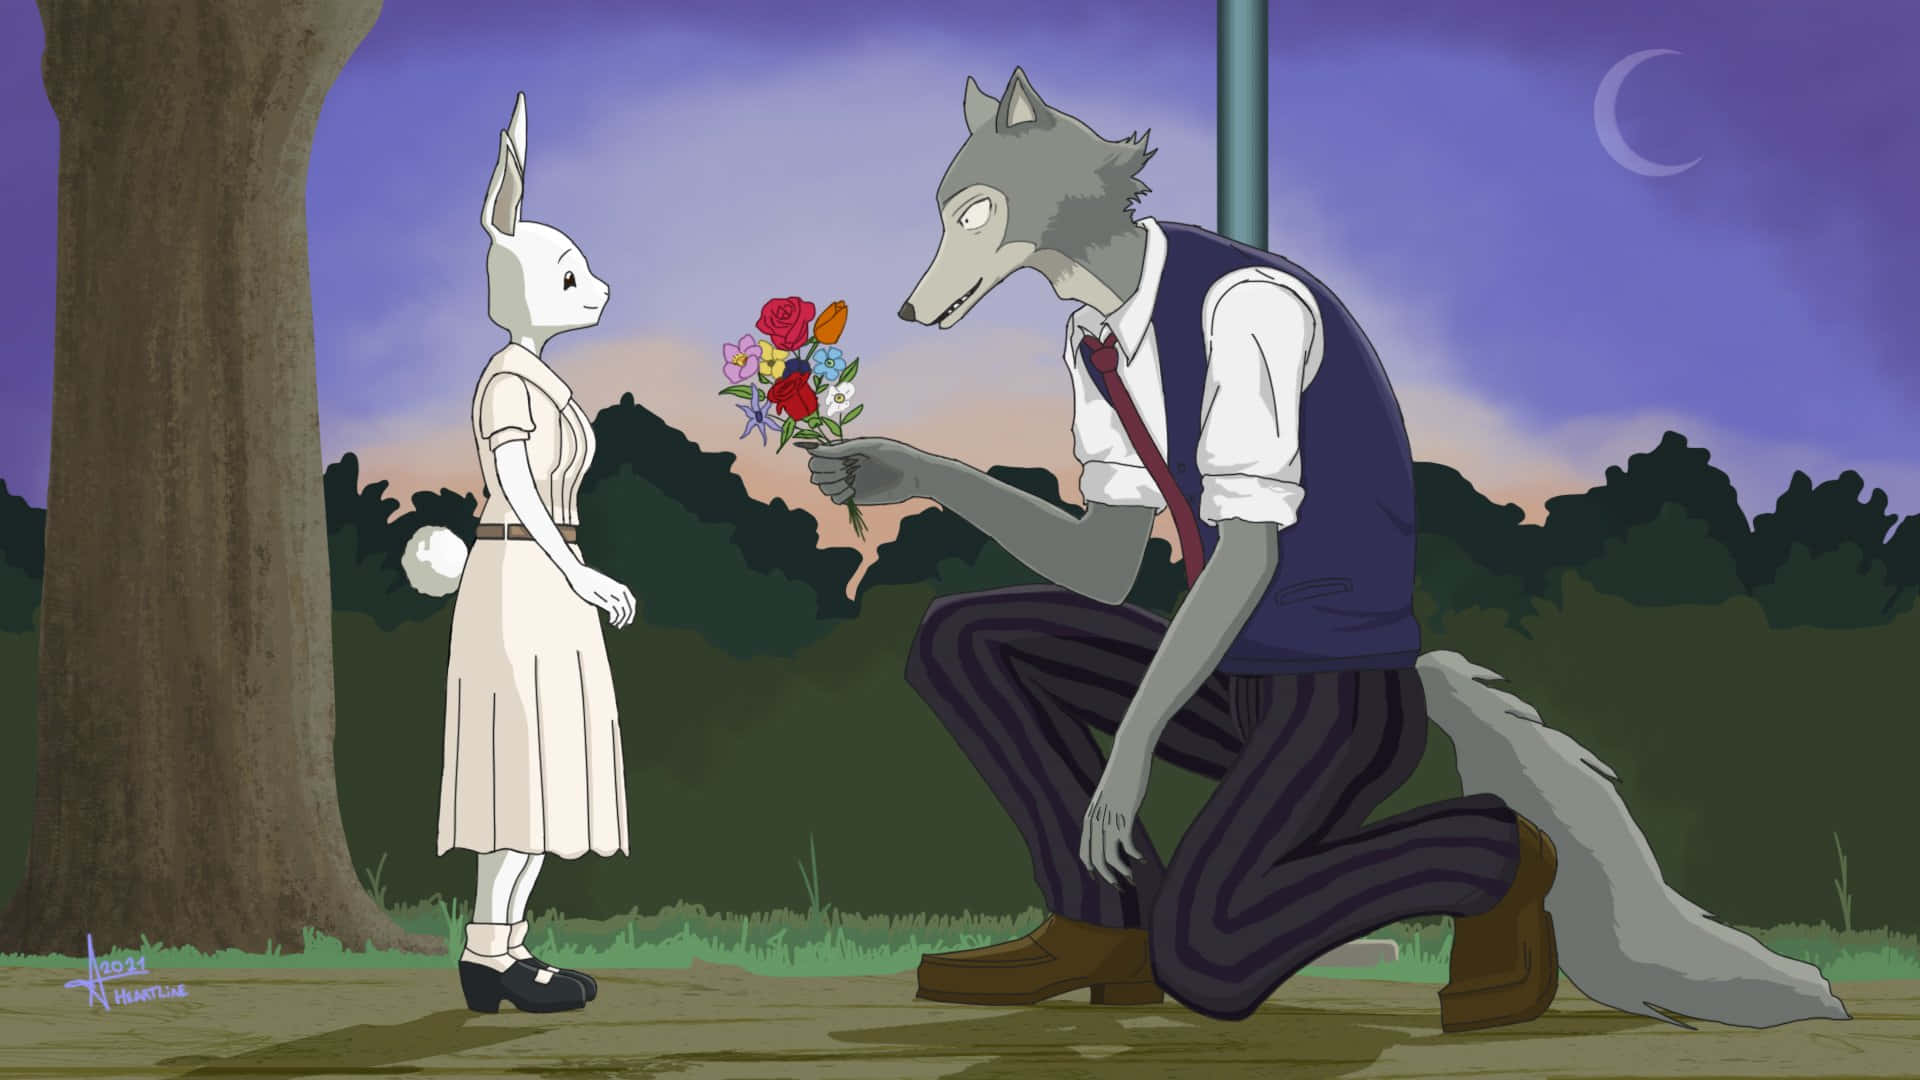 Einwolf Und Ein Mädchen, Die Sich Gegenseitig Blumen Schenken. Wallpaper